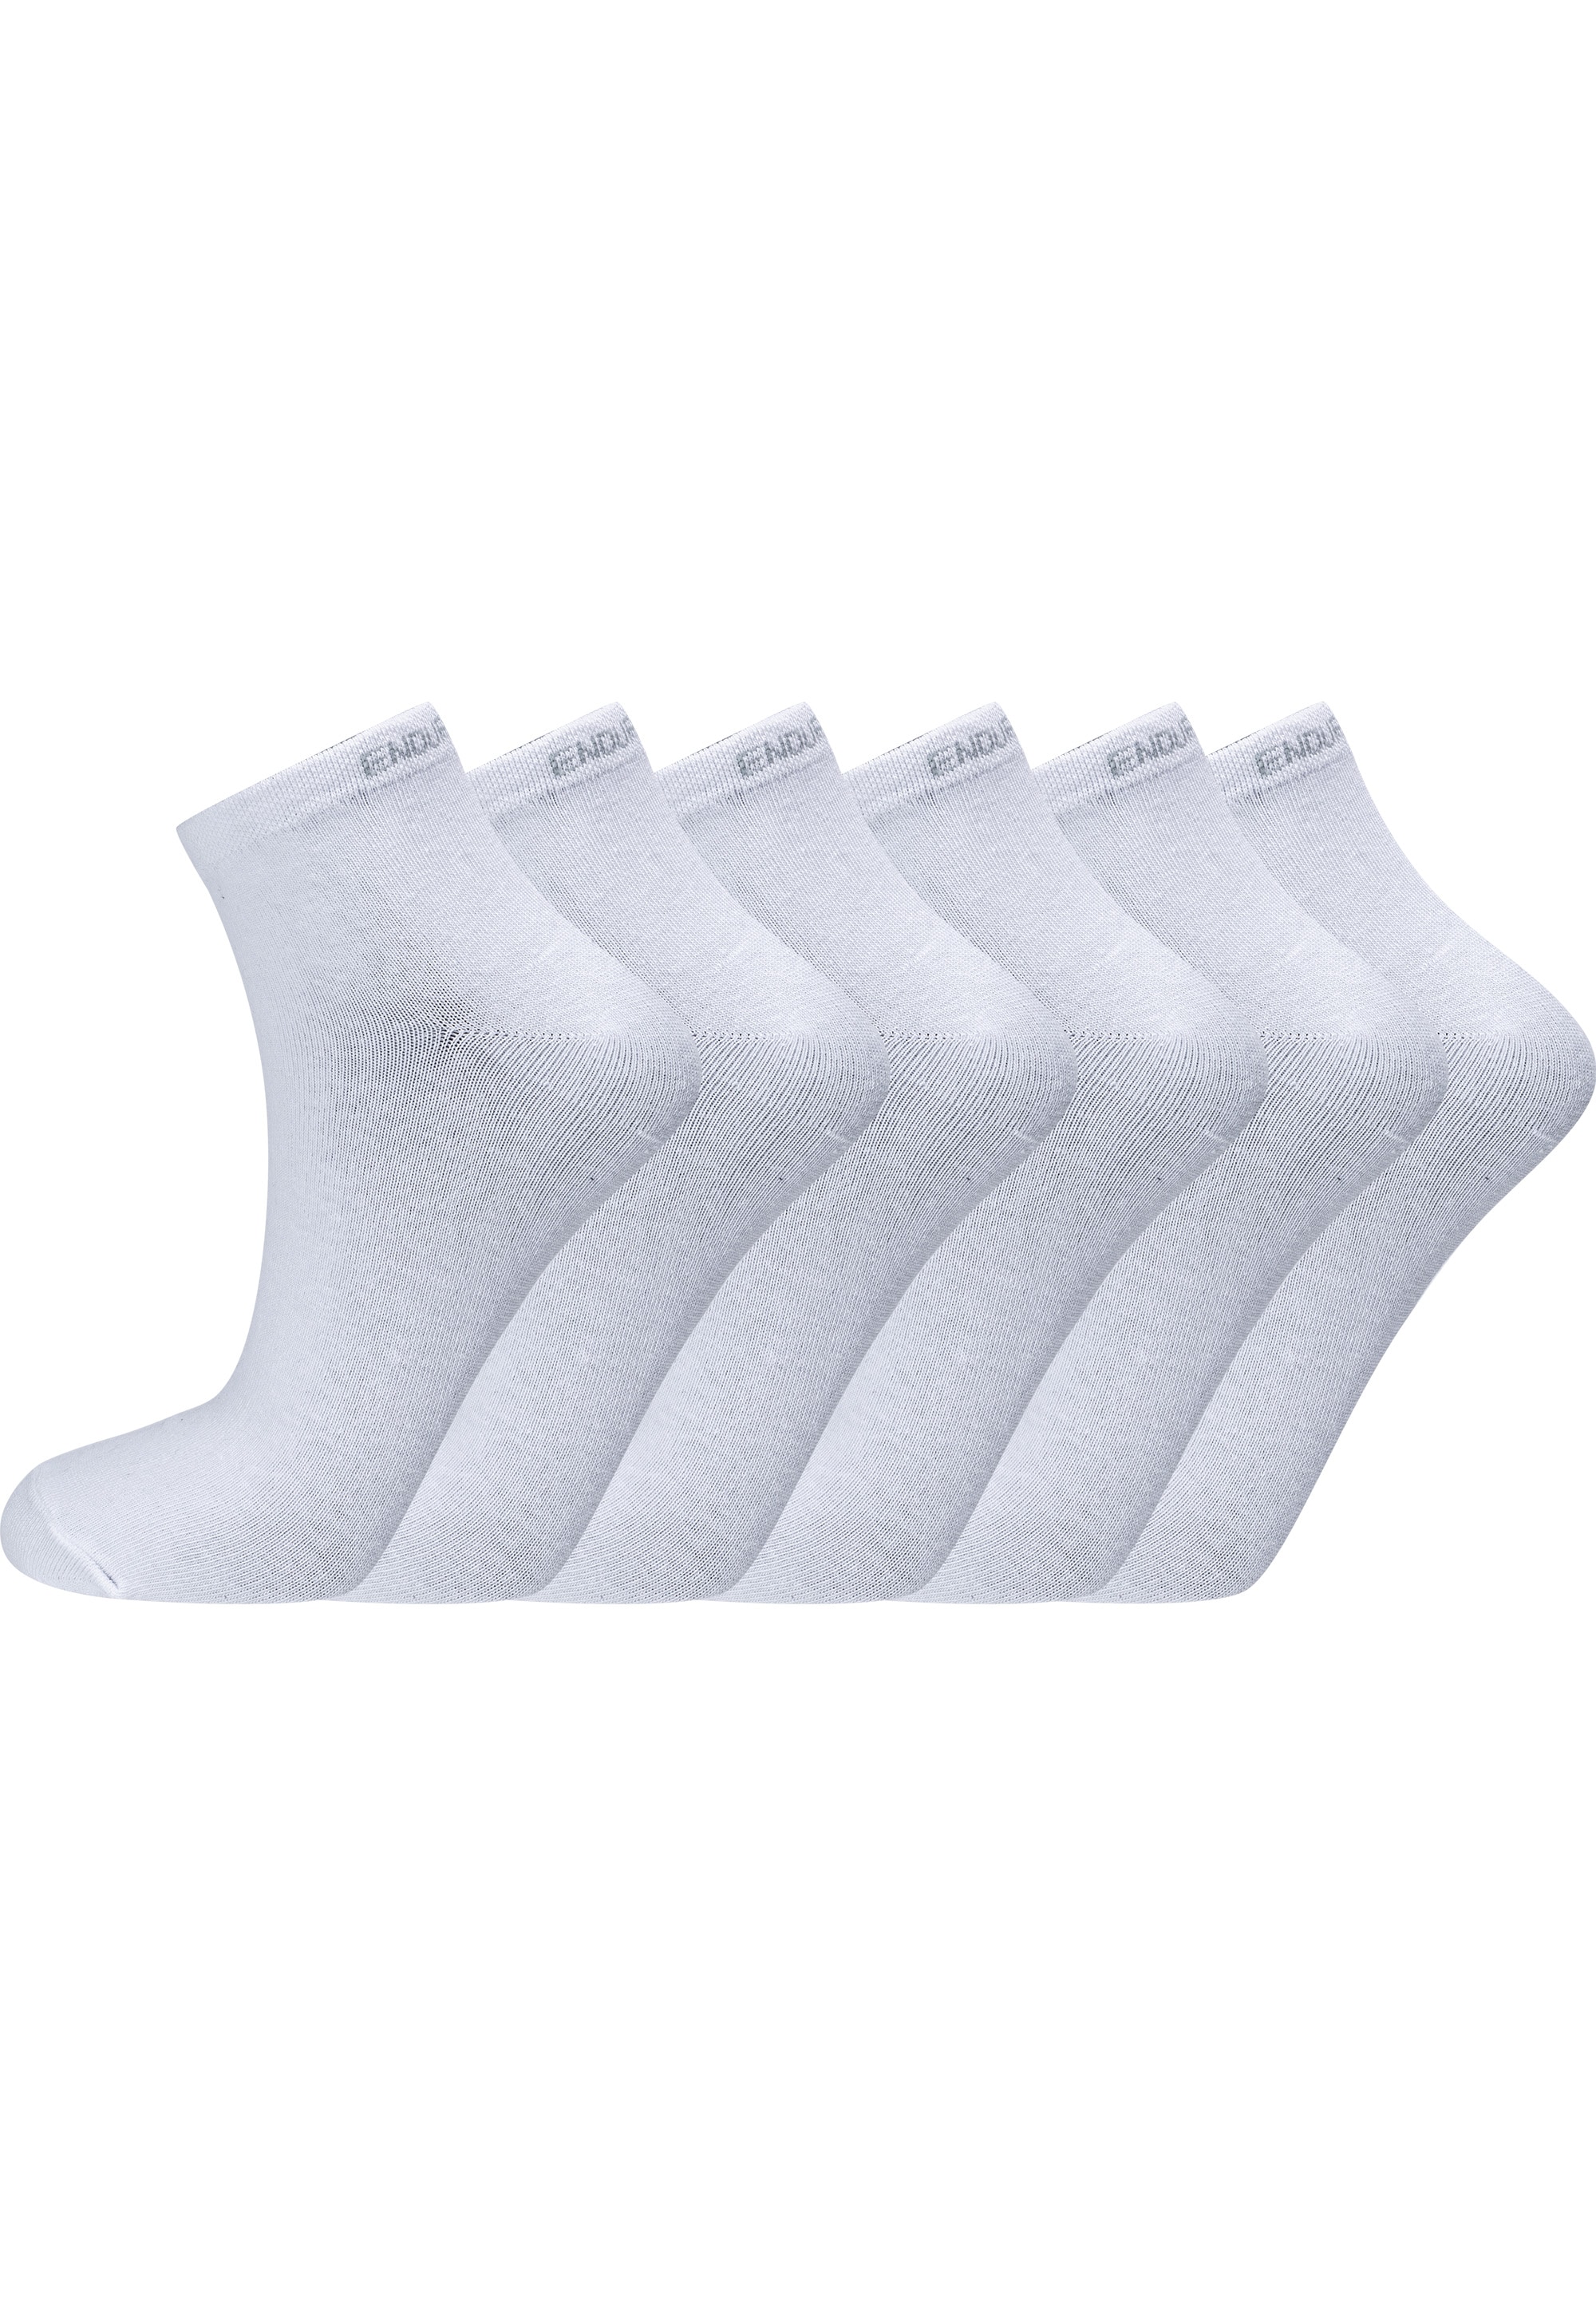 ENDURANCE Socken »Ibi«, (6 Paar), mit sehr hohem Baumwolle-Anteil